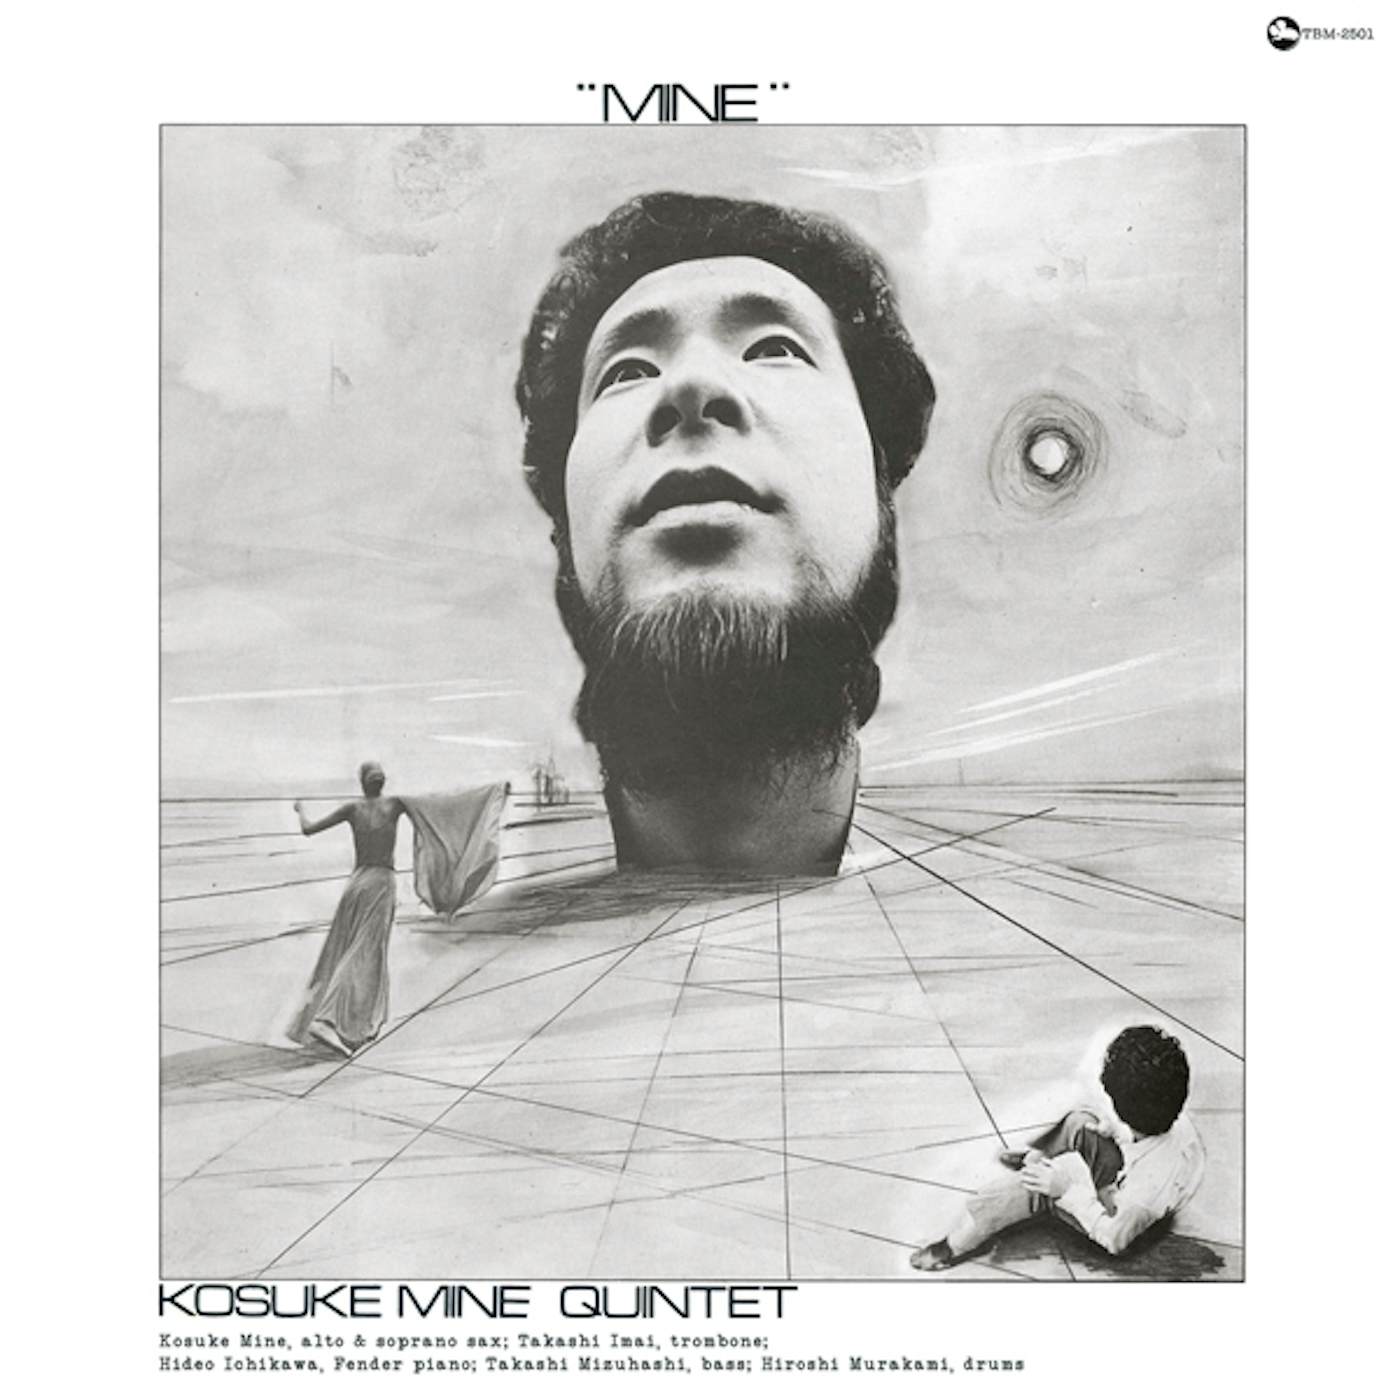 Kosuke Mine Quintet MINE Vinyl Record